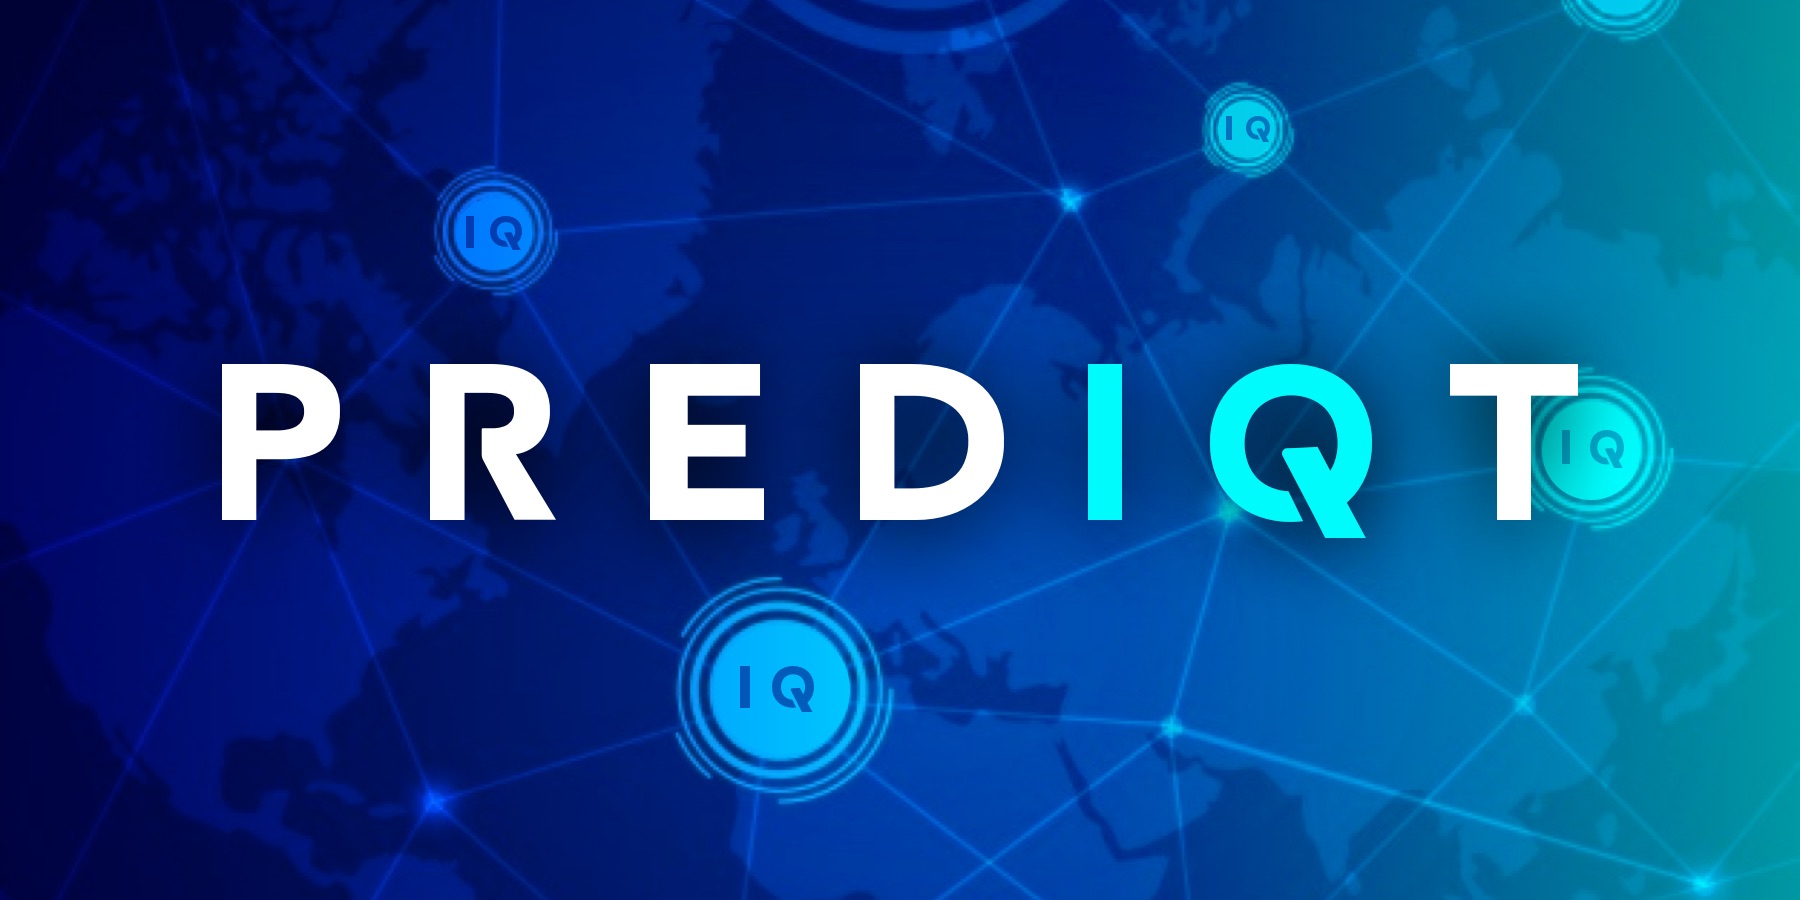 PredIQt 2.0 为 EOS 提供便于使用的预测市场